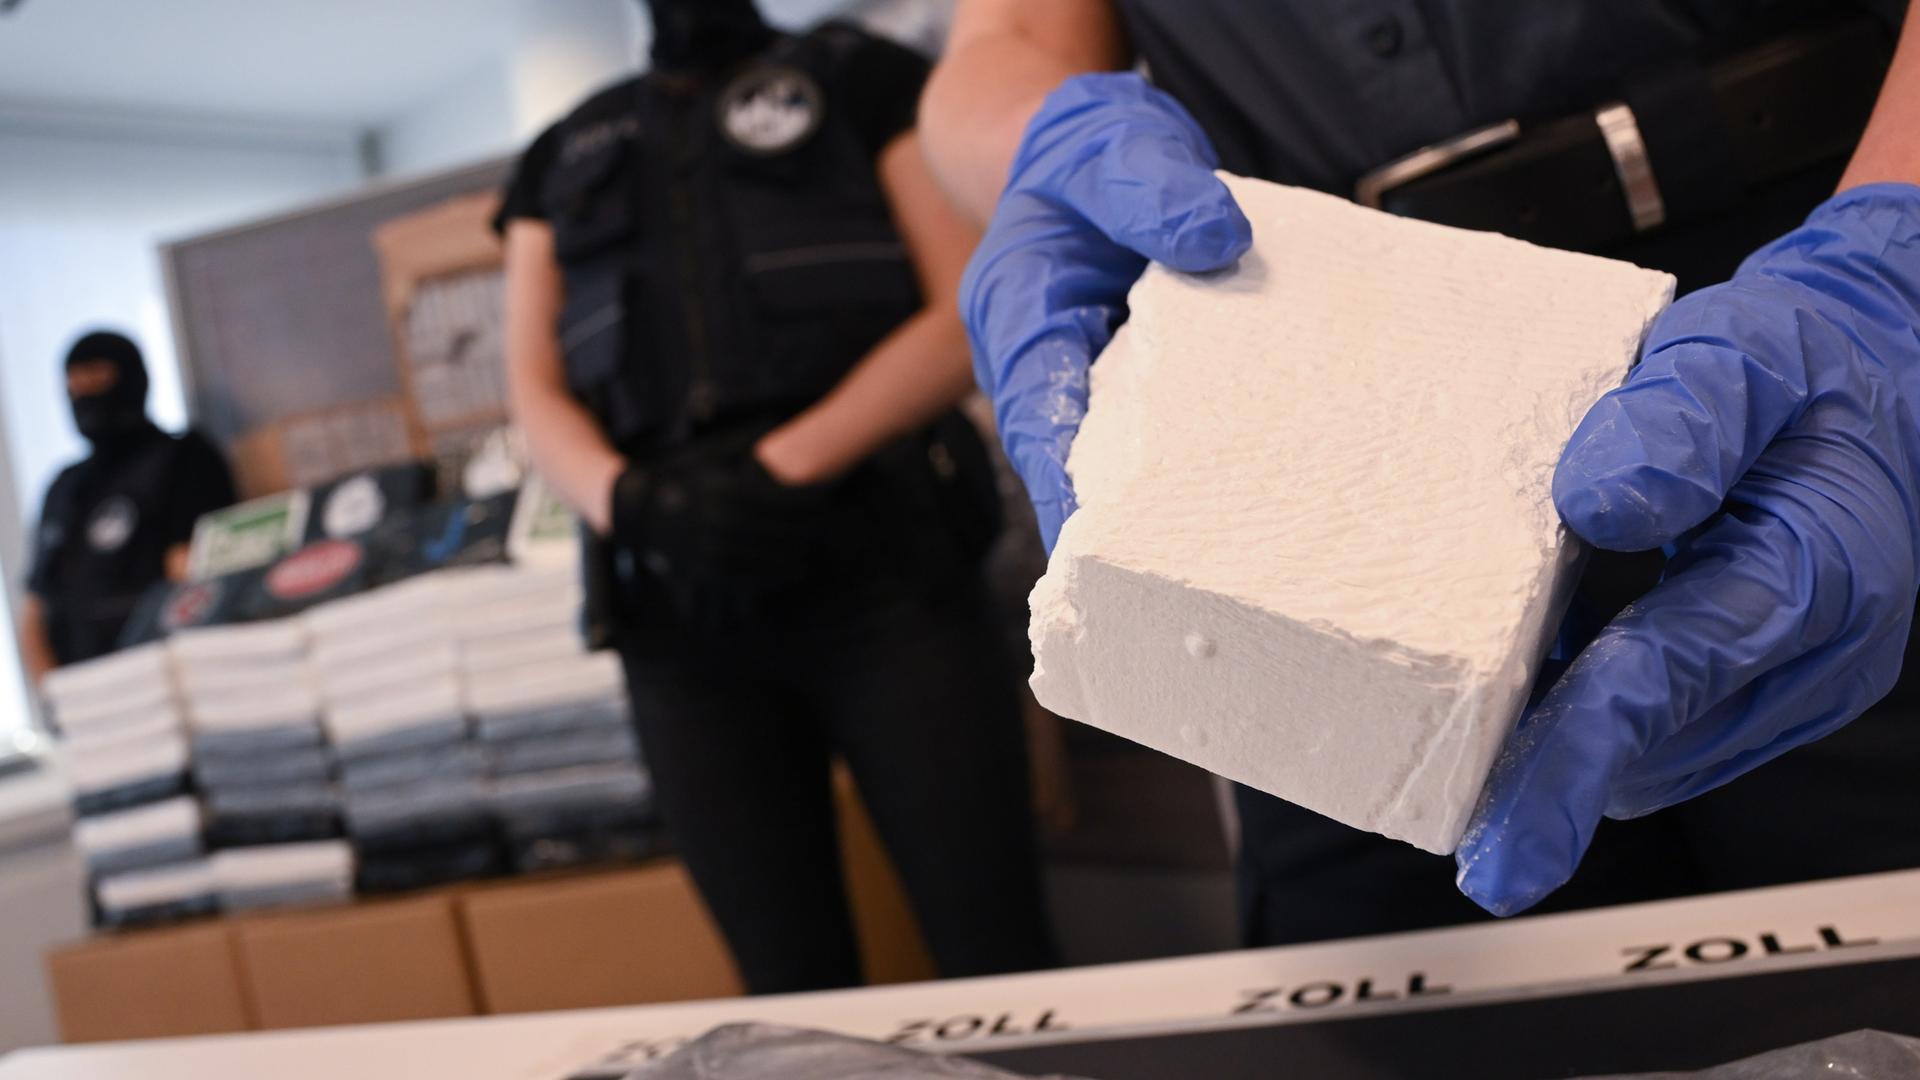 Sichergestelltes hochreines Kokain wird auf der Jahres-Pressekonferenz von Hauptzollamt und Zollfahndungsamt Frankfurt am Main am Flughafen präsentiert.